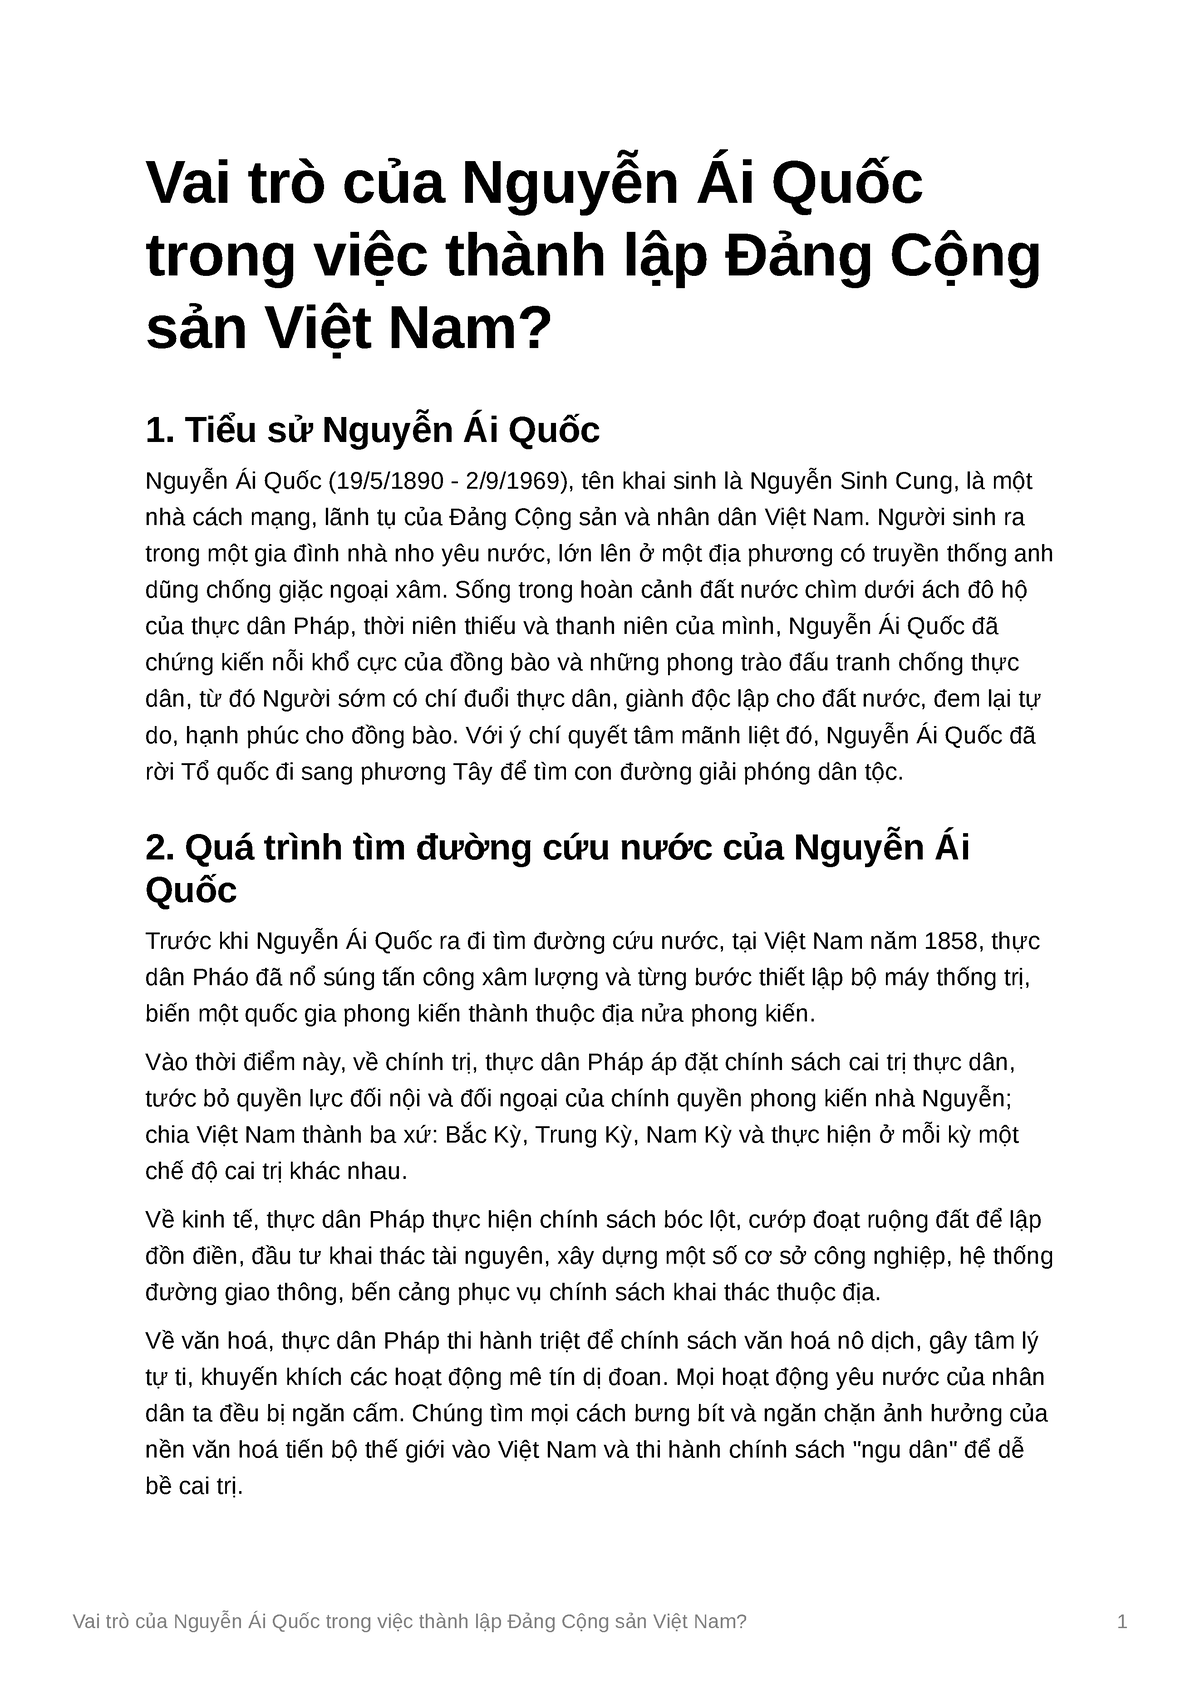 Vai tr ca Nguyn i Quc trong vic thnh lp ng Cng sn Vit Nam Vai trò của Nguyễn Ái Quốc trong